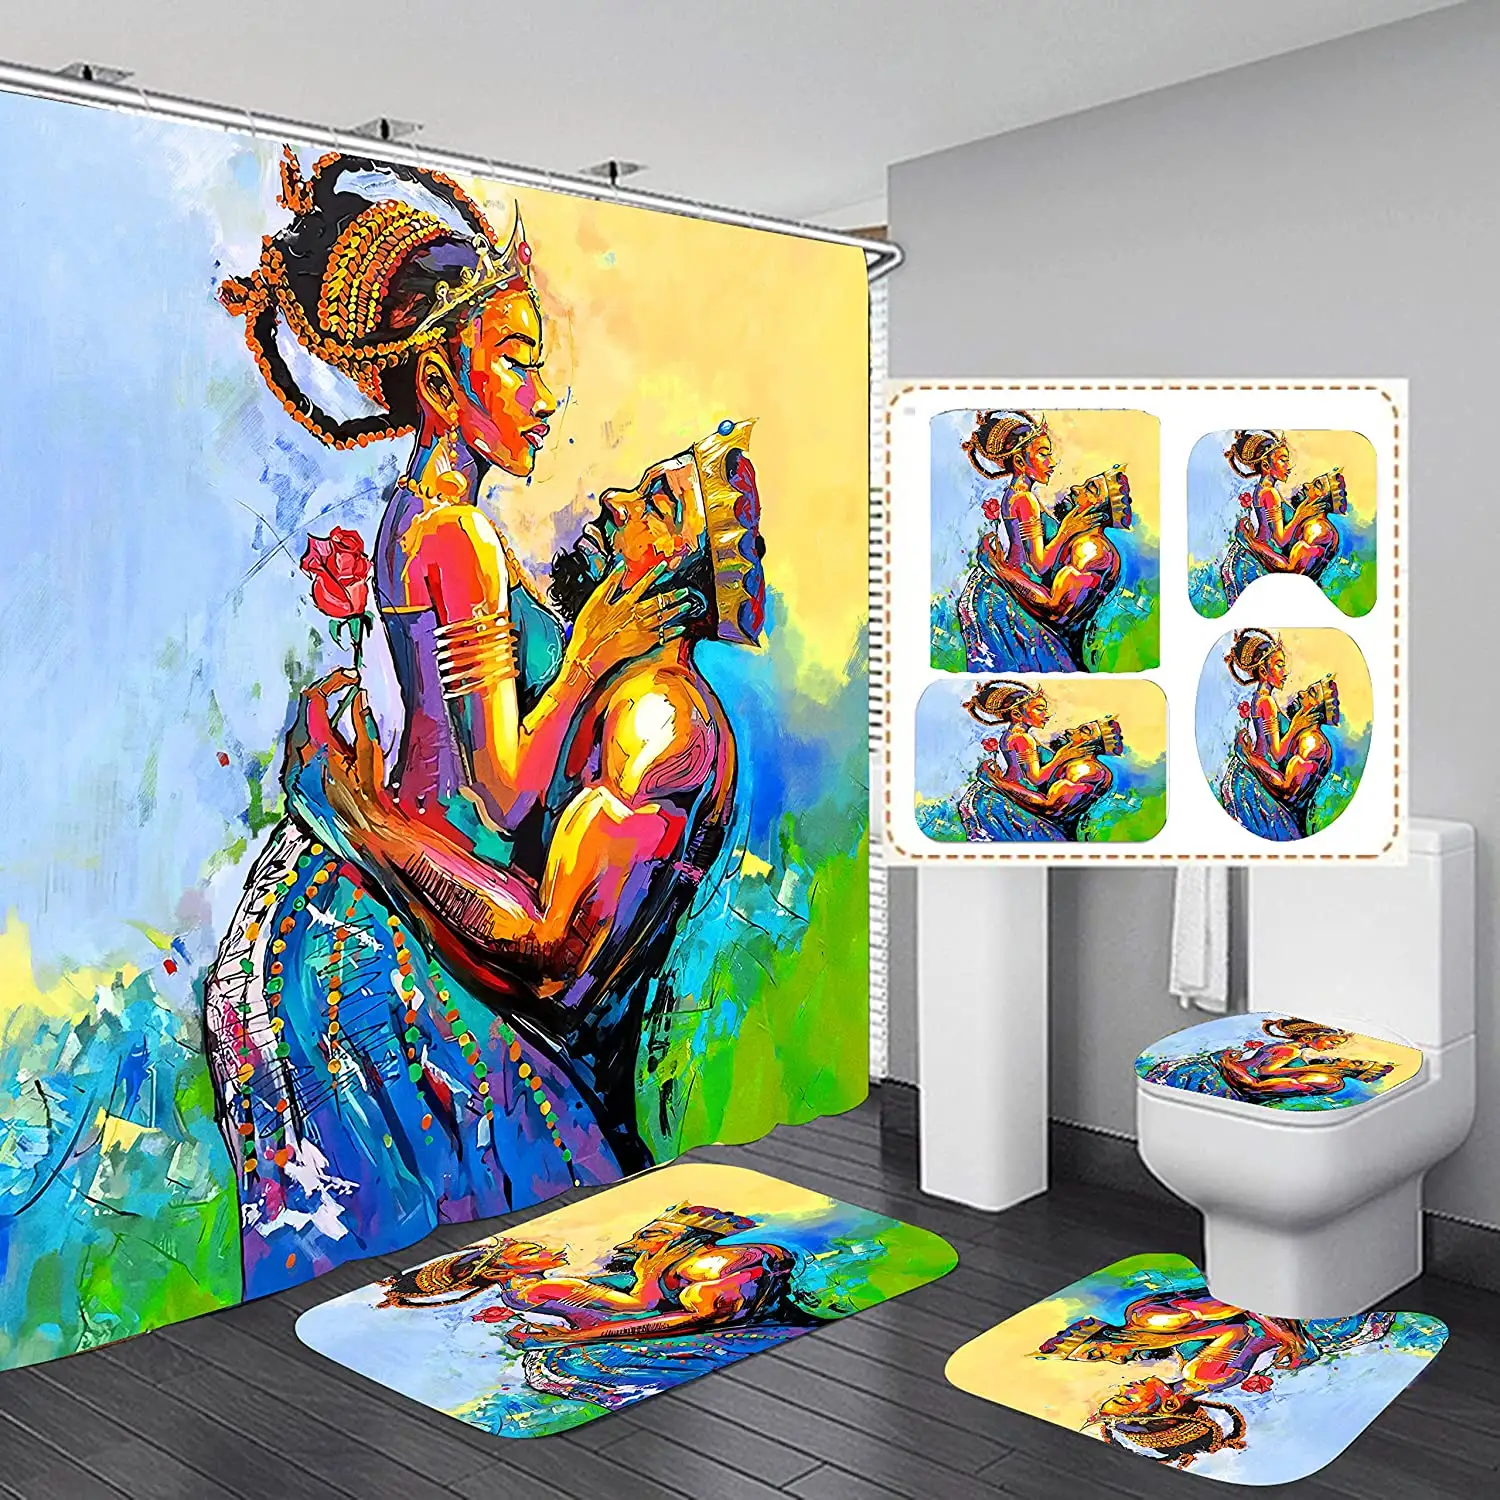 الكلاسيكية افريقى عشاق زوجين اللوحة دش مجموعة الستائر ، 4 قطعة مجموعة للحمام ديكور الأفريقي امرأة دش الستار